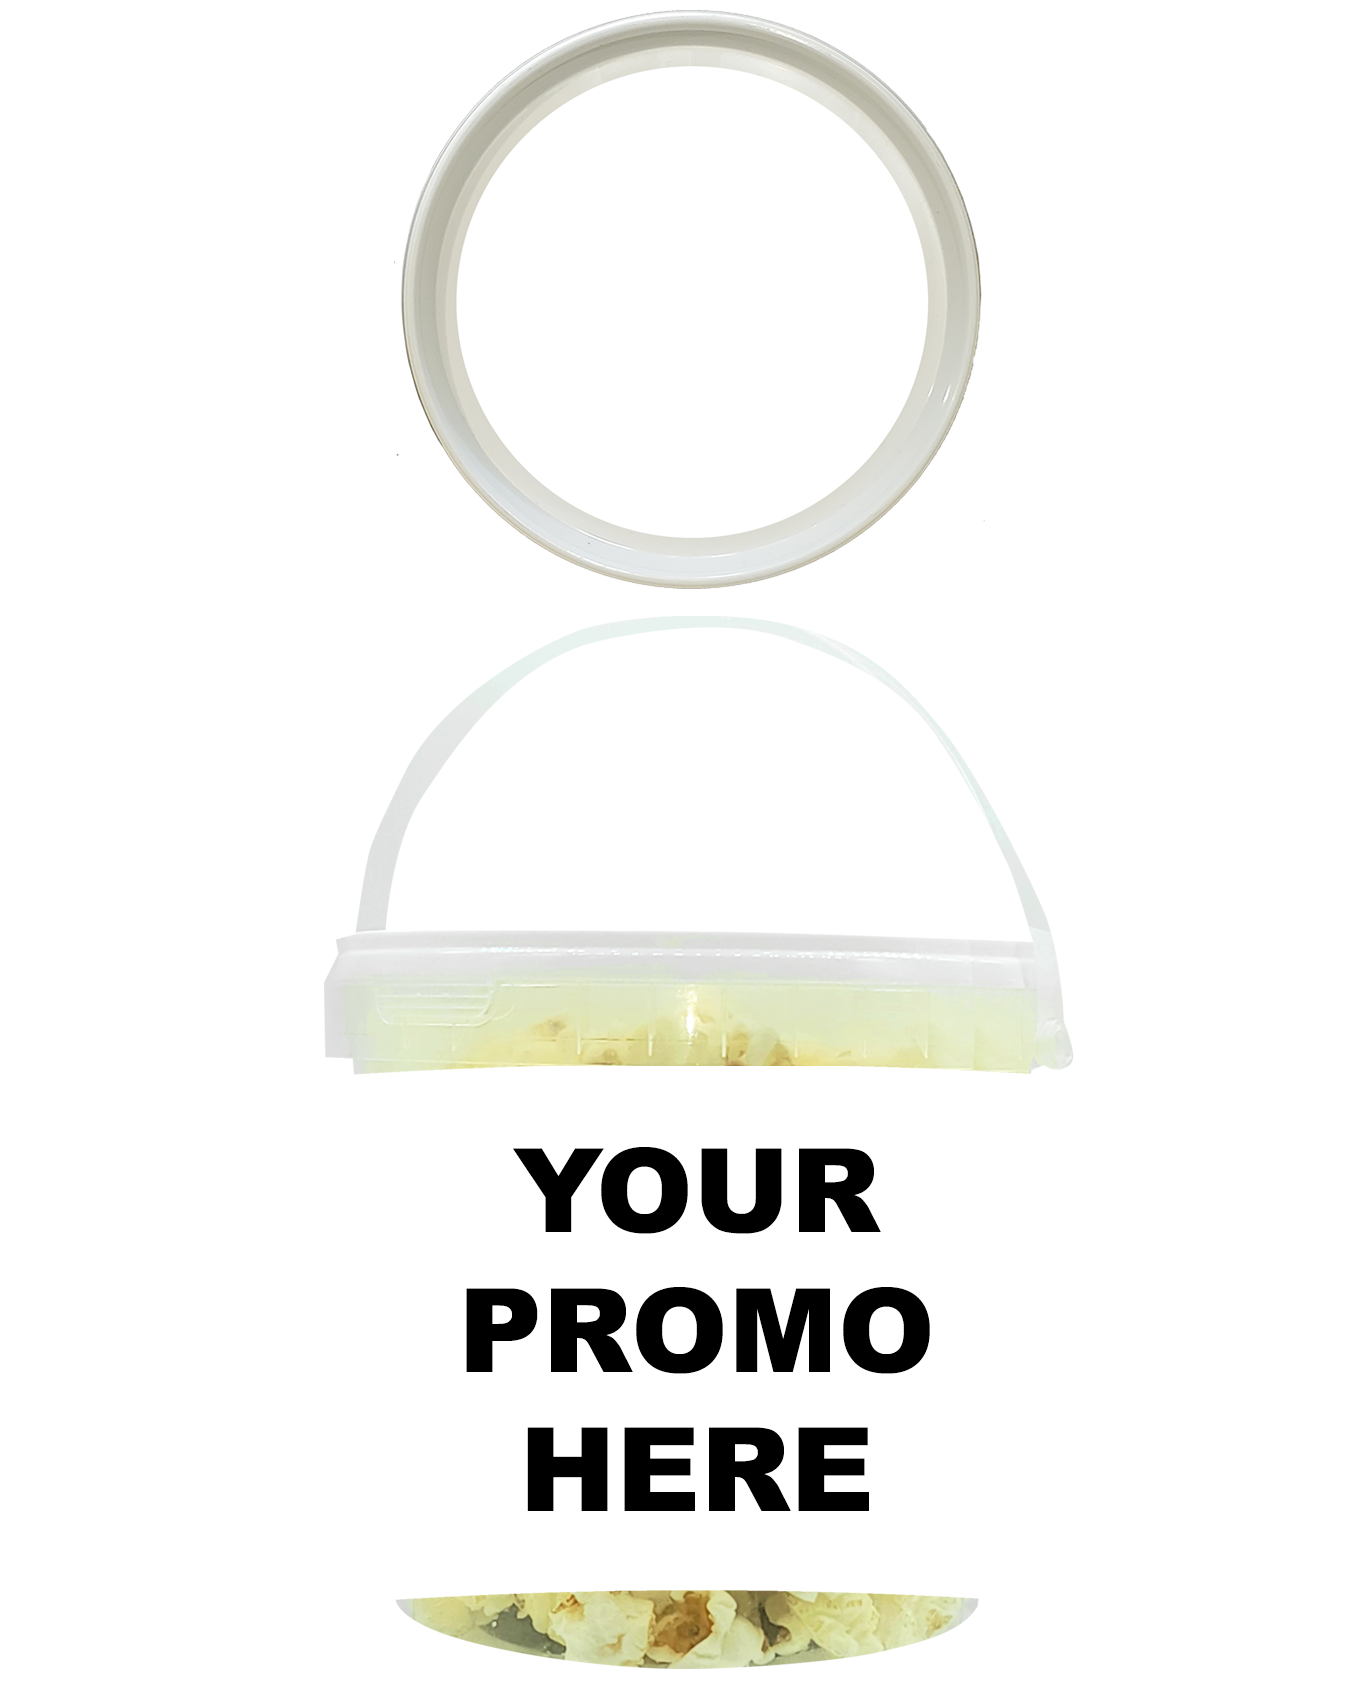 Promo Pop™ - Kettle Corn Jumbo (as low as $7.99 per bucket) Case of 12 Price